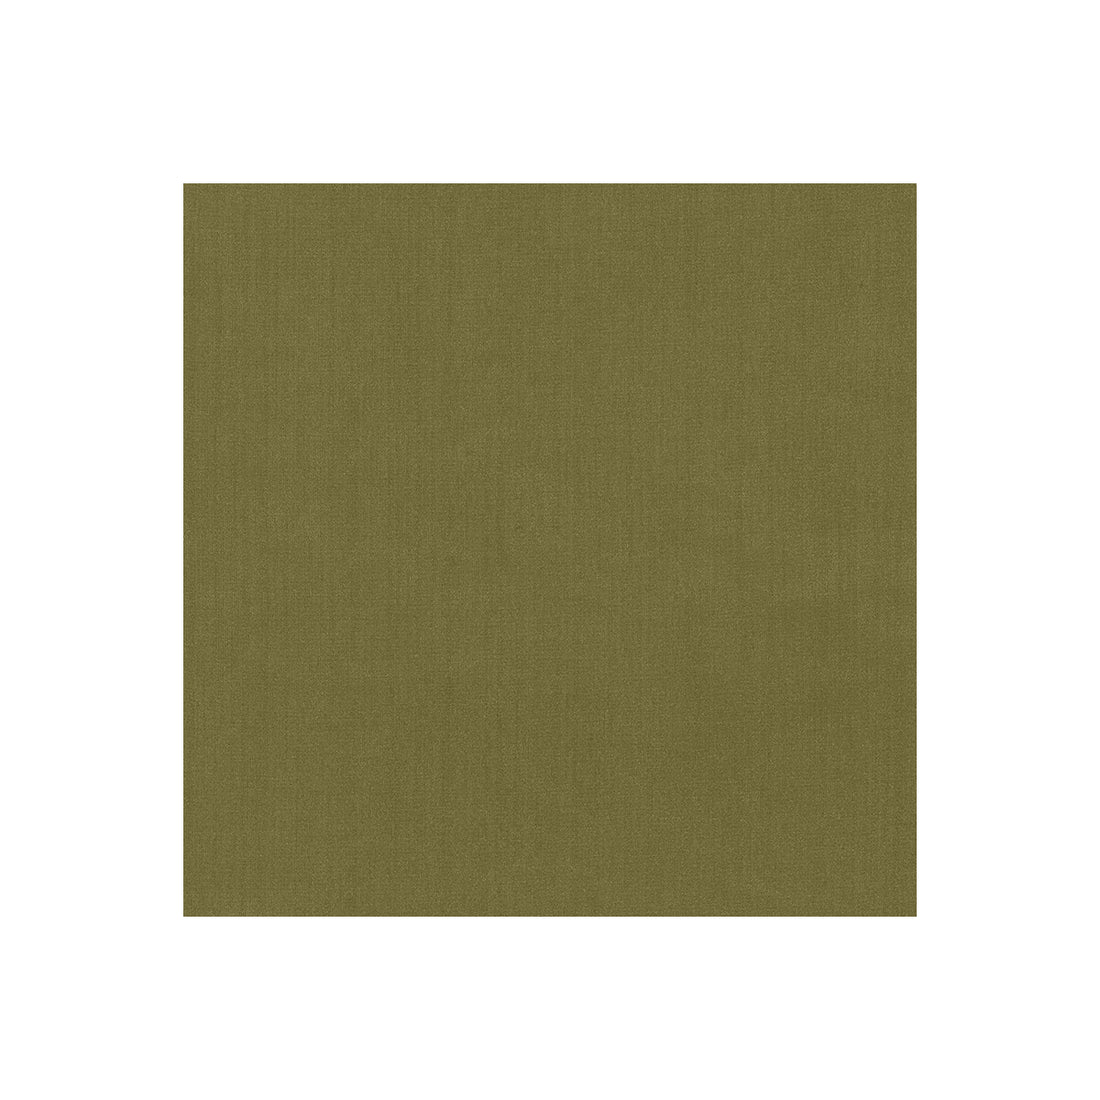 Kravet Basics fabric in 35916-30 color - pattern 35916.30.0 - by Kravet Basics